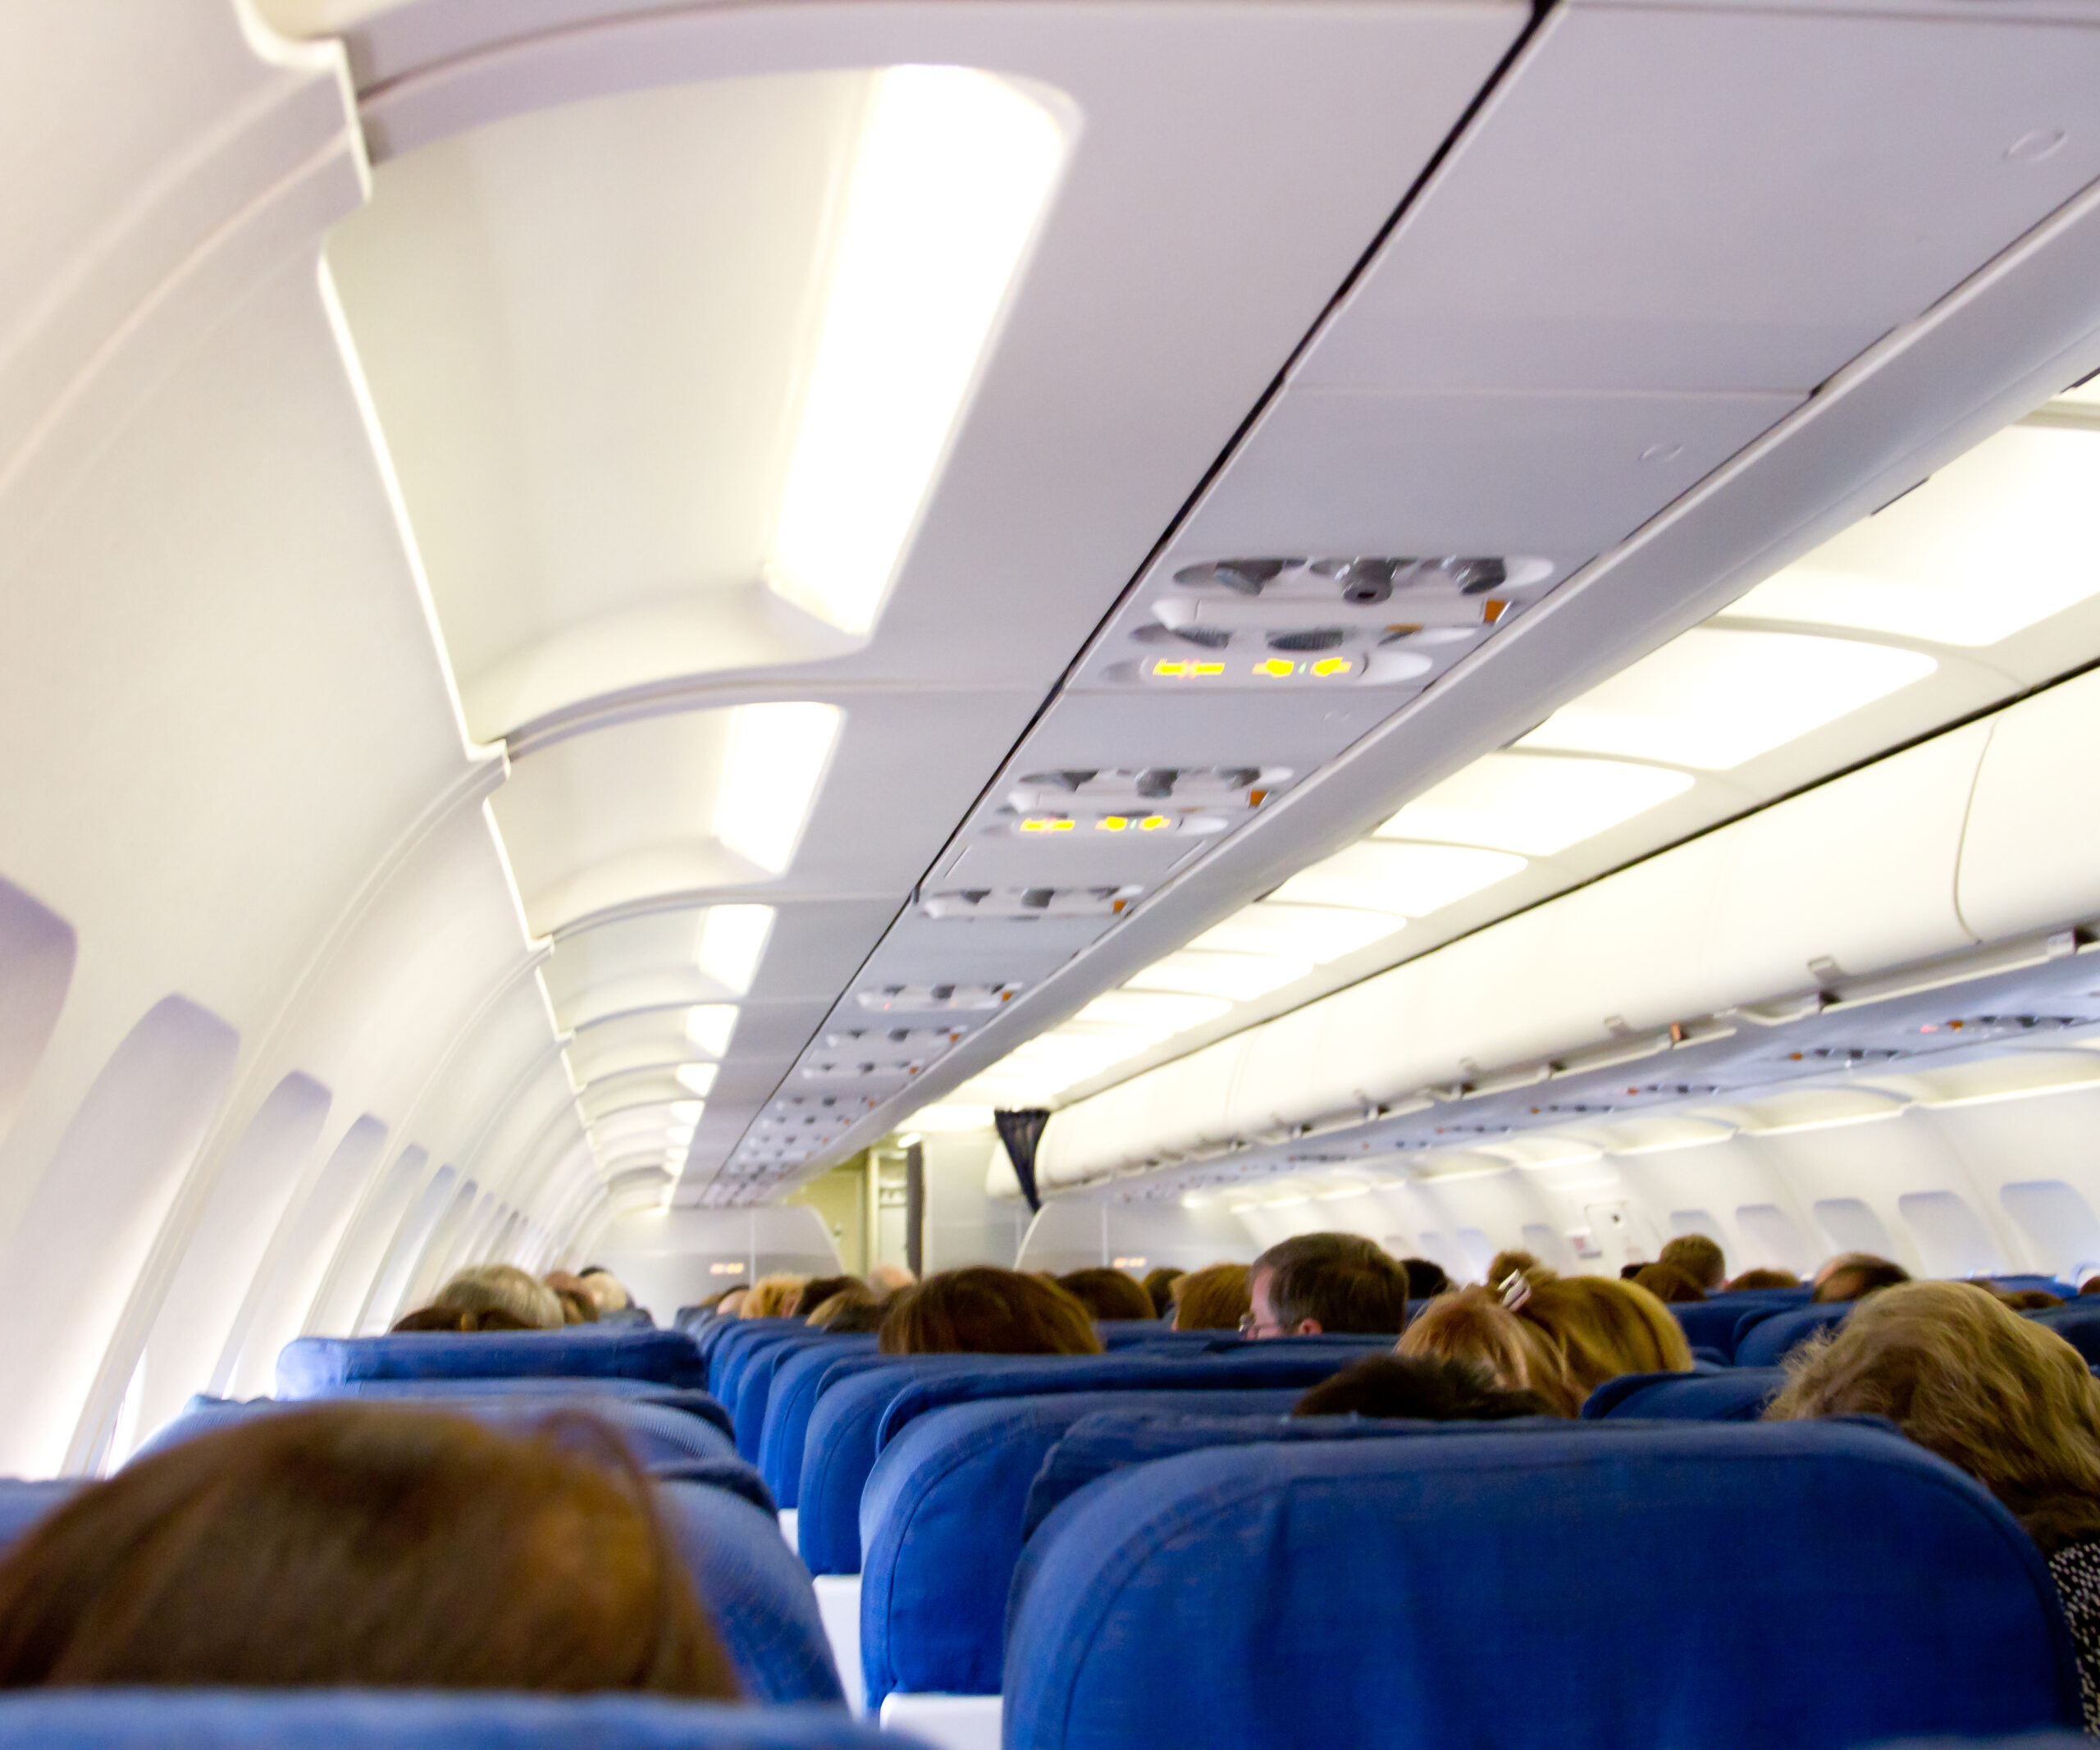 Unaccompanied teen ‘groped’ by man on flight